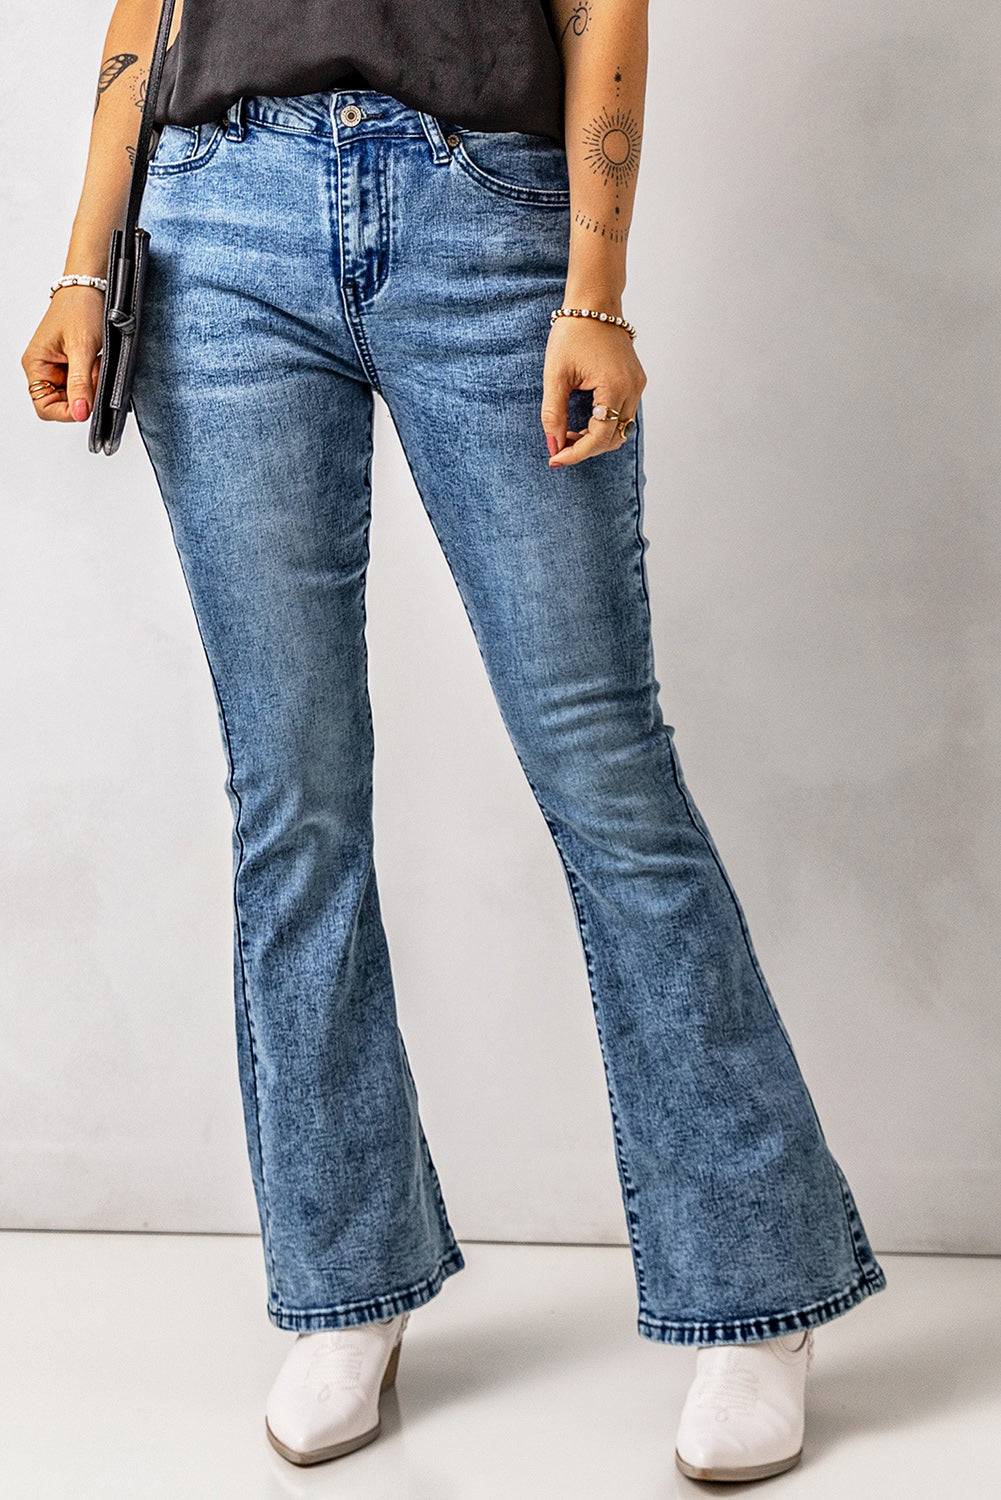 Vintage Wash Flare Jeans with Pockets - DromedarShop.com Online Boutique